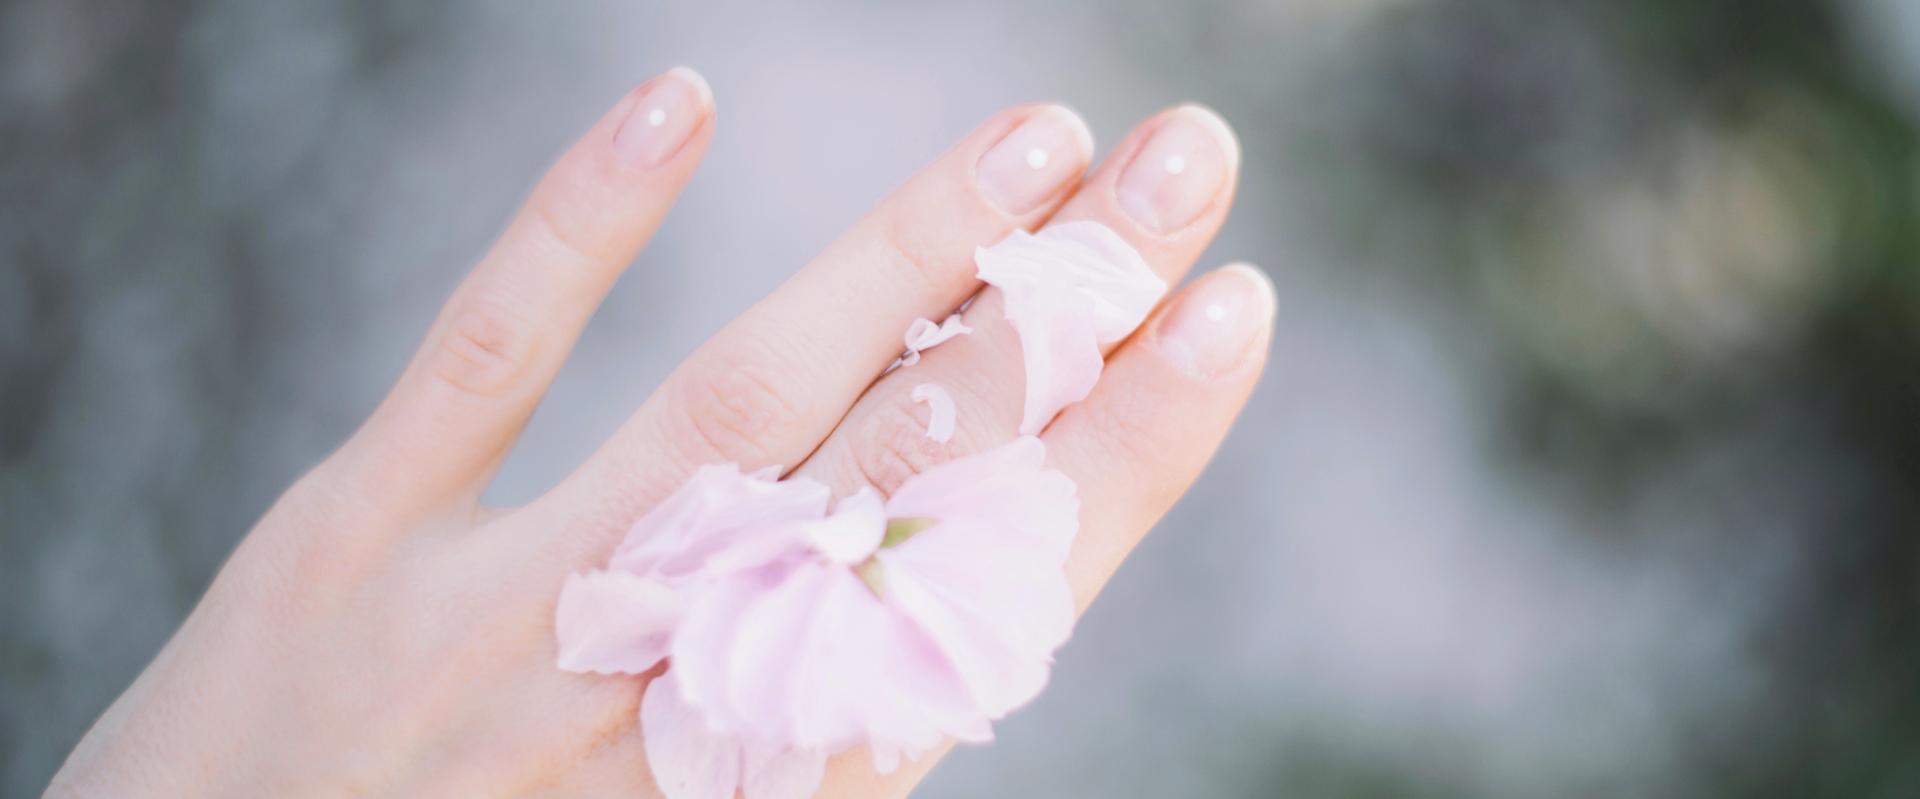 Onycholiza paznokci – jakie są objawy, przyczyny i jak ją leczyć?